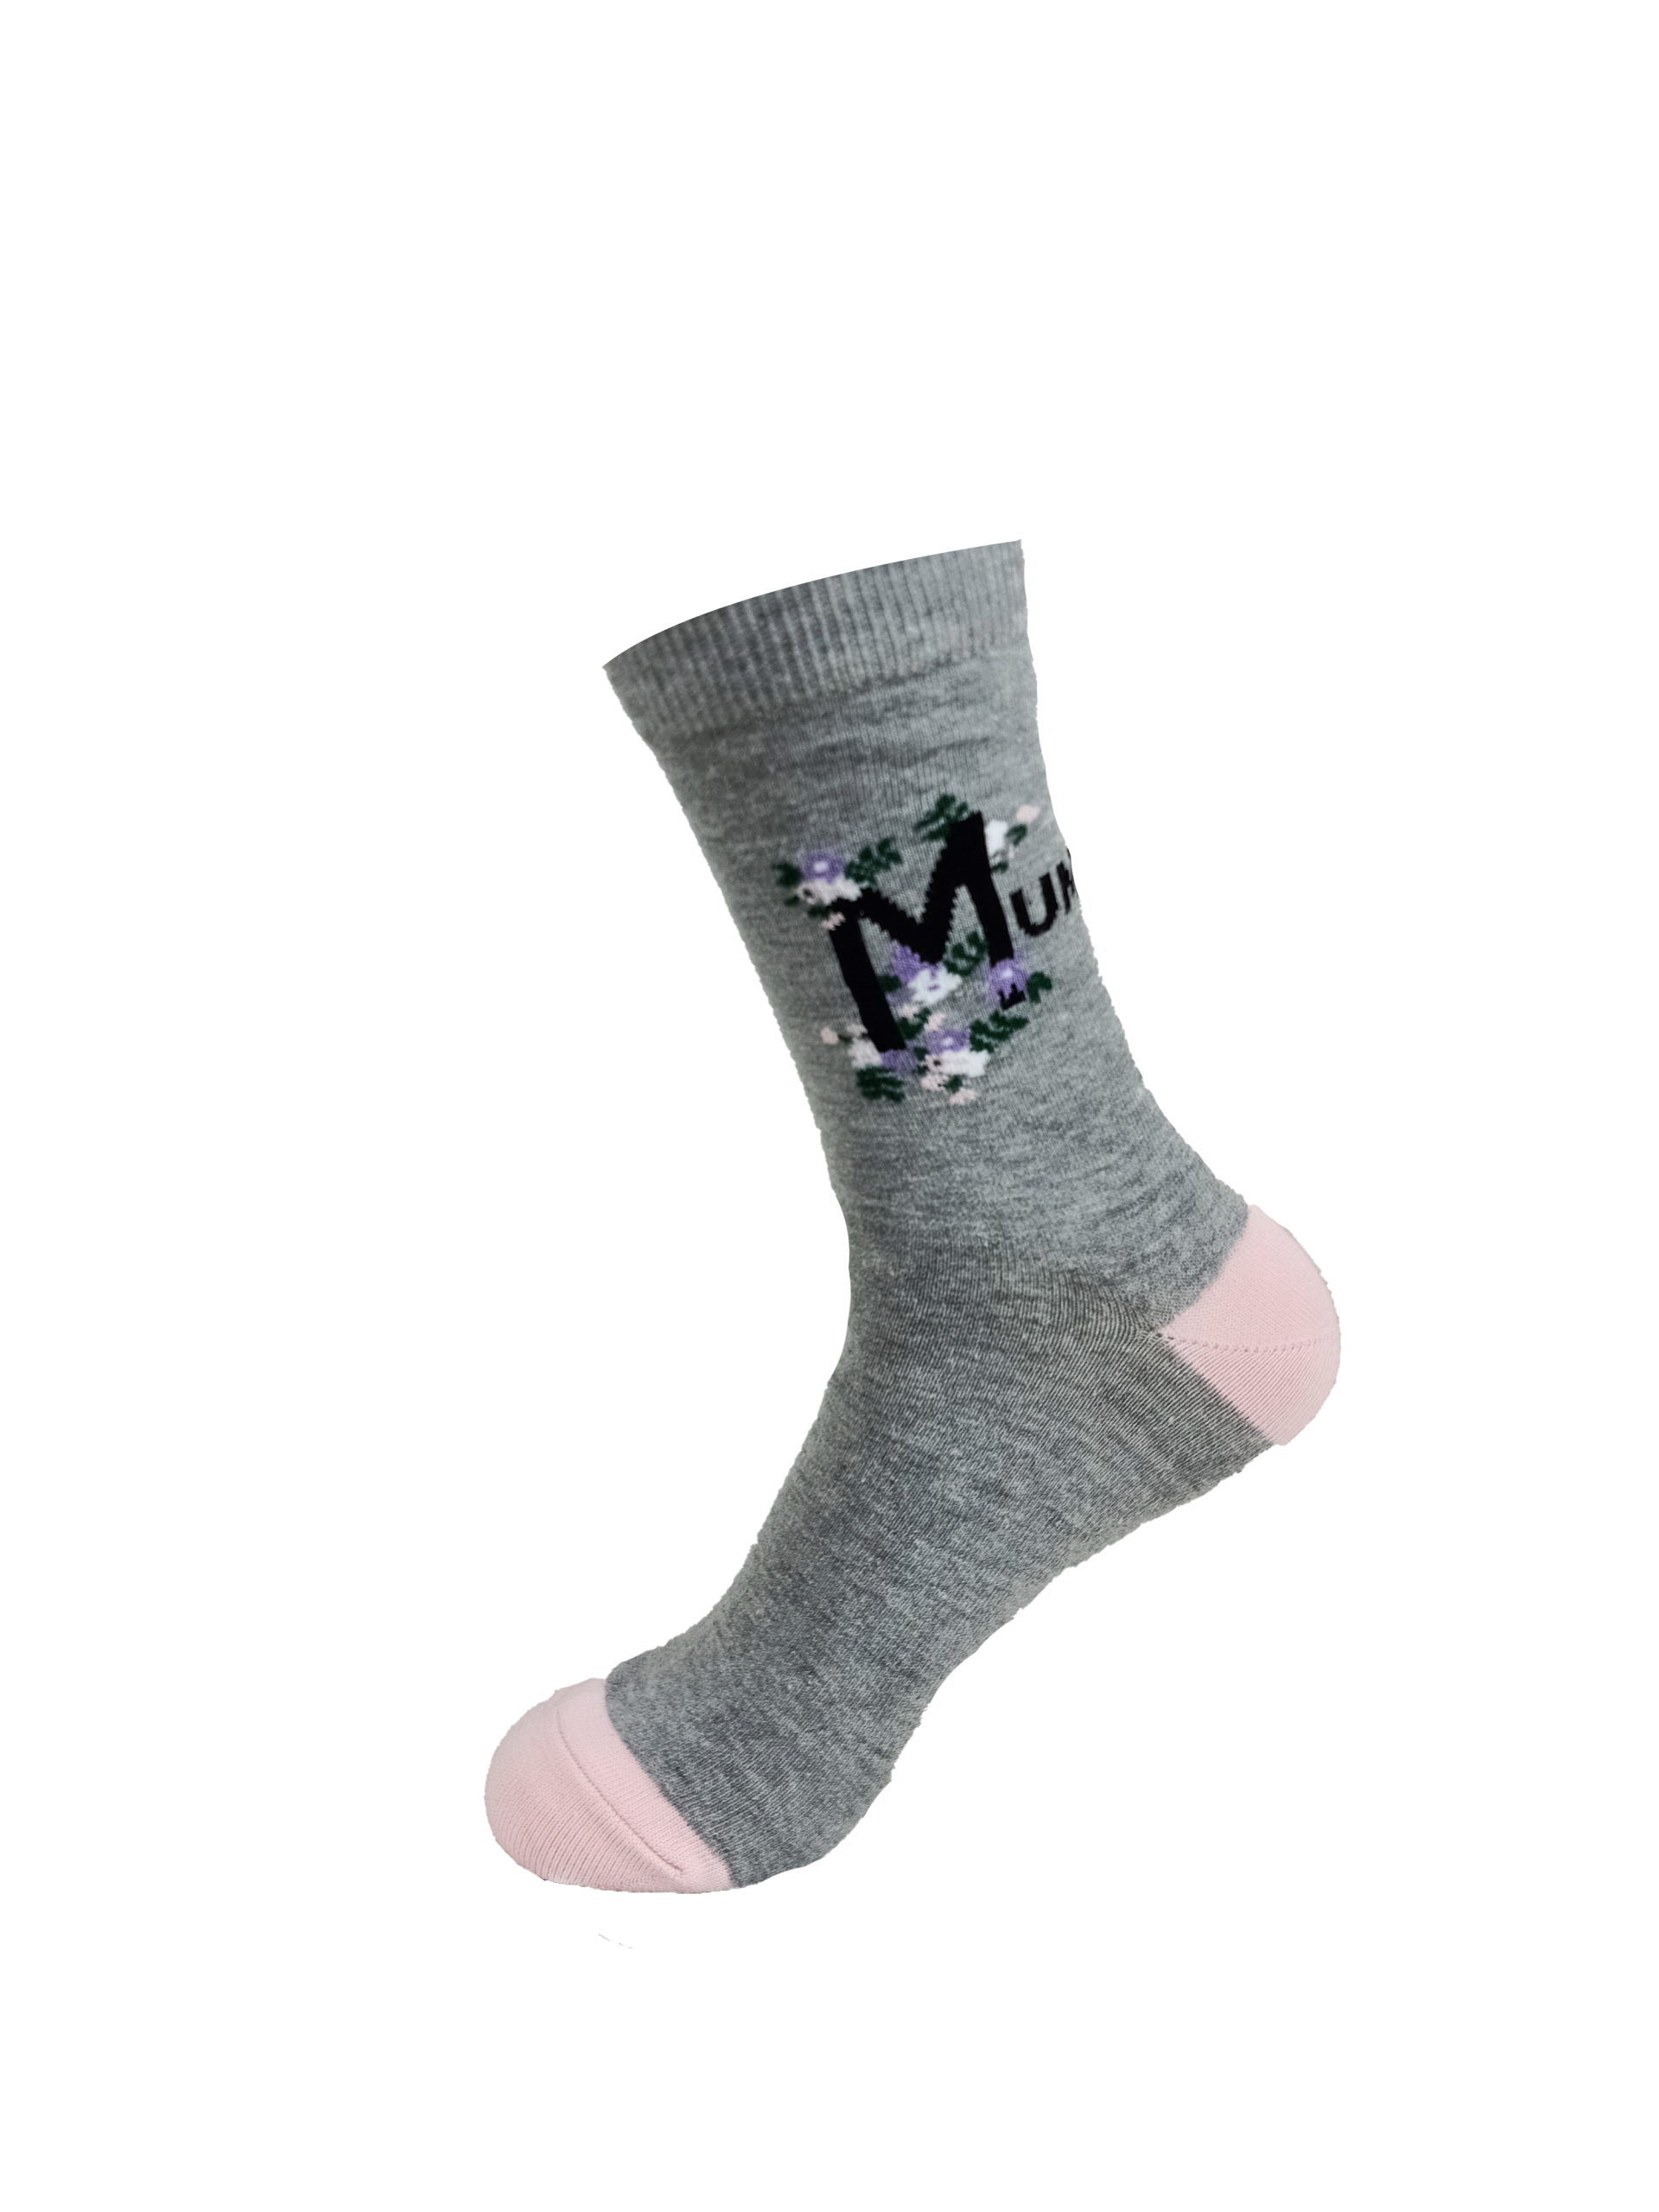 Graphic Mum Socks